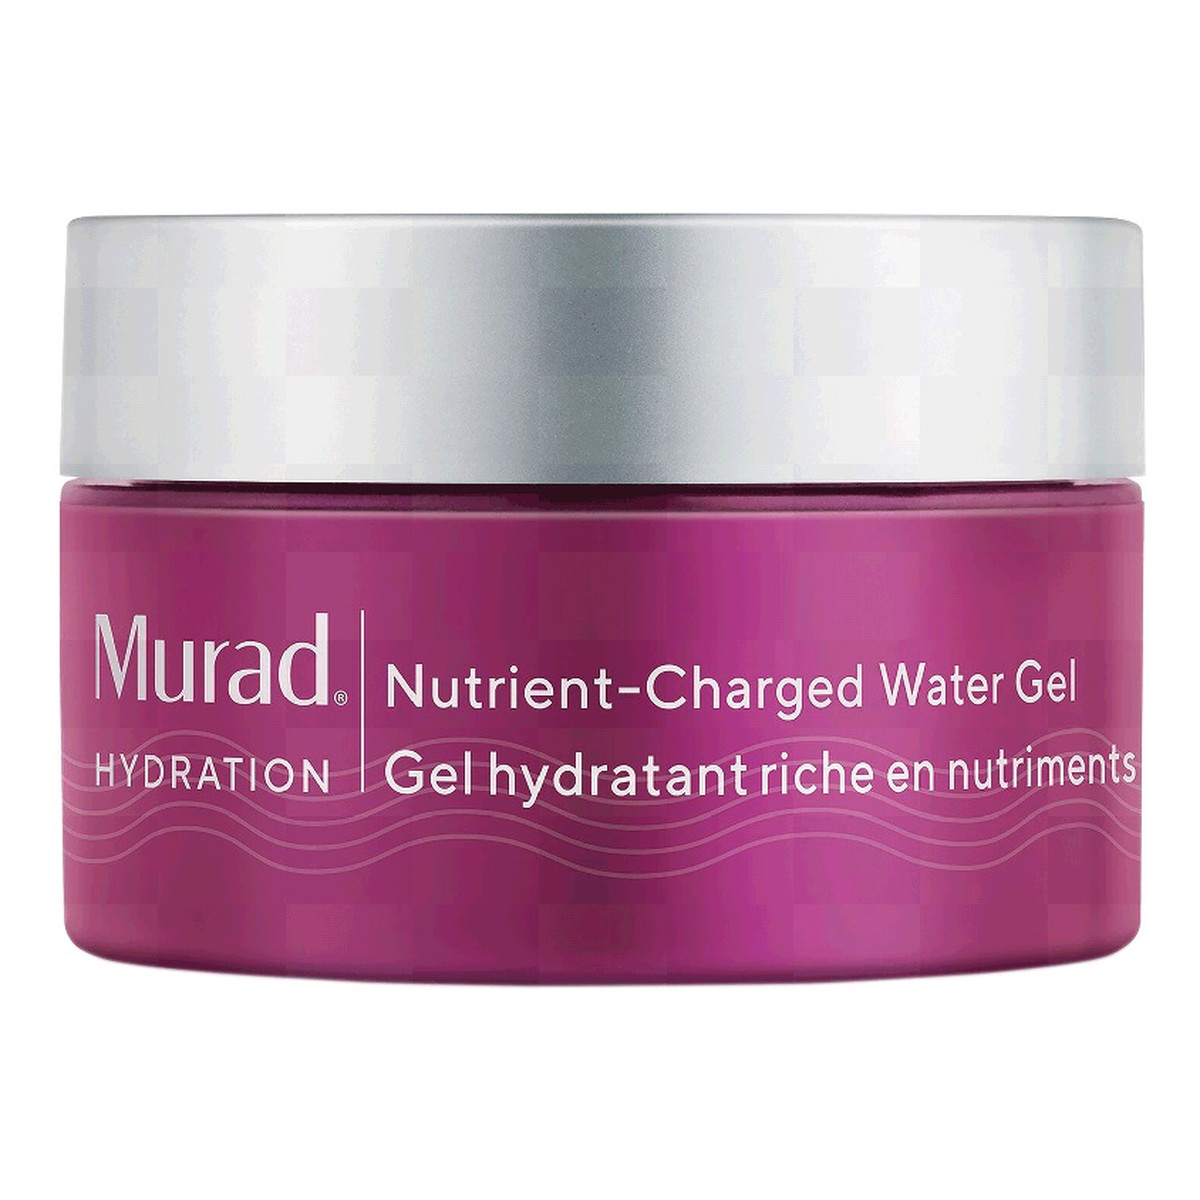 Murad Hydration Nutrient-Charged Water Gel lekki nawilżający Żel do twarzy na bazie wody 50ml